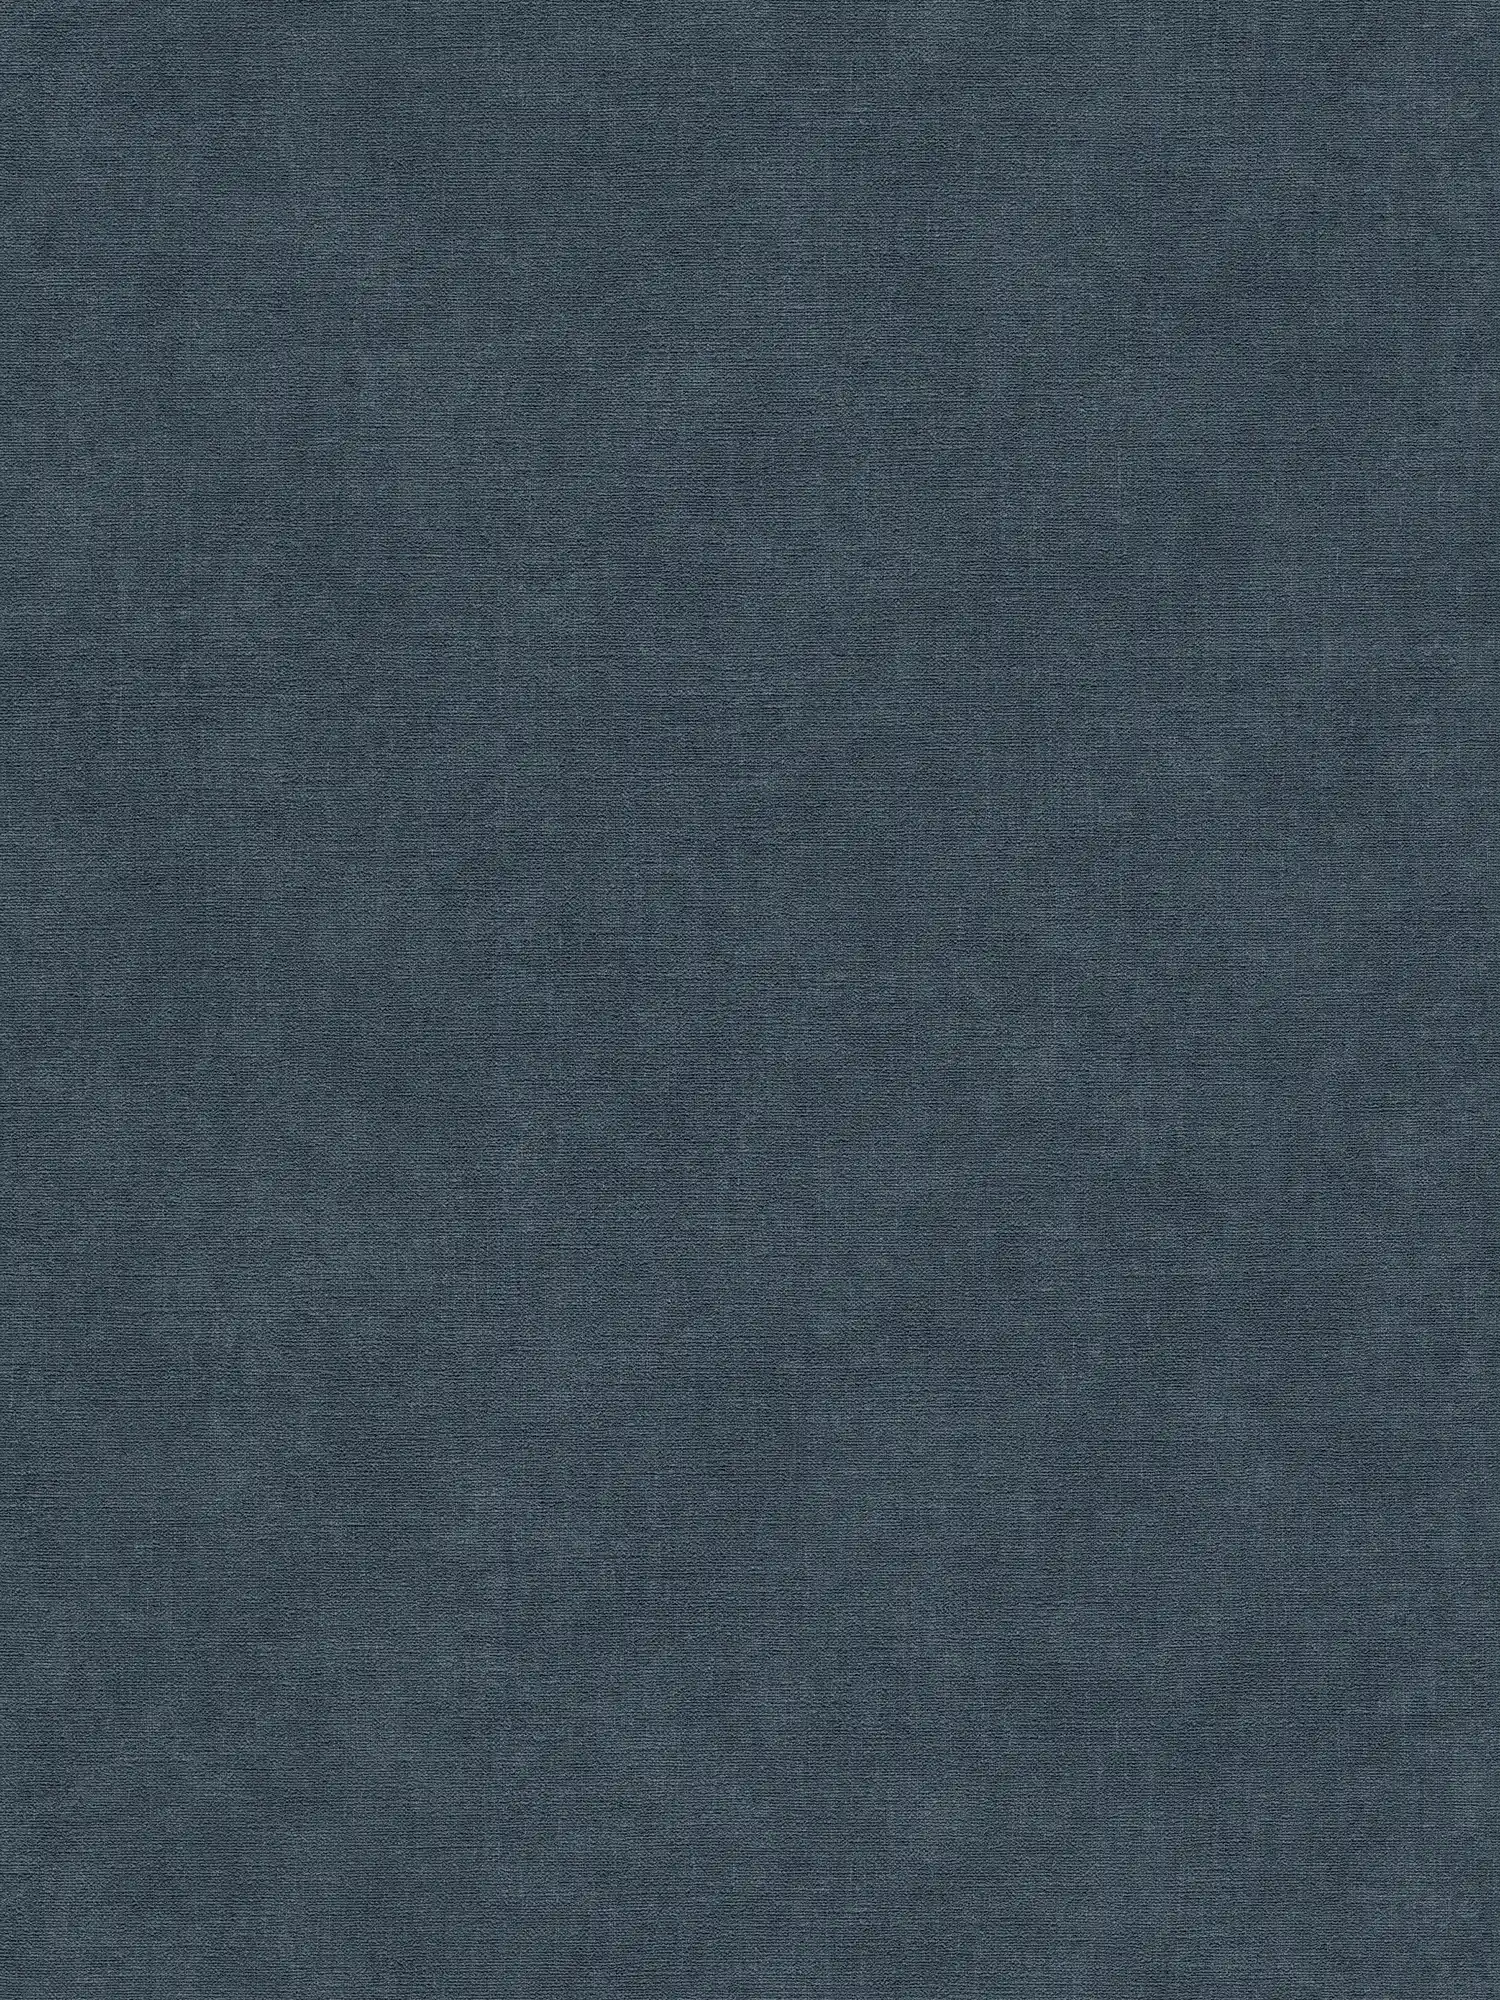 Papel pintado monocolor no tejido de aspecto textil, ligeramente texturado - azul, azul oscuro
